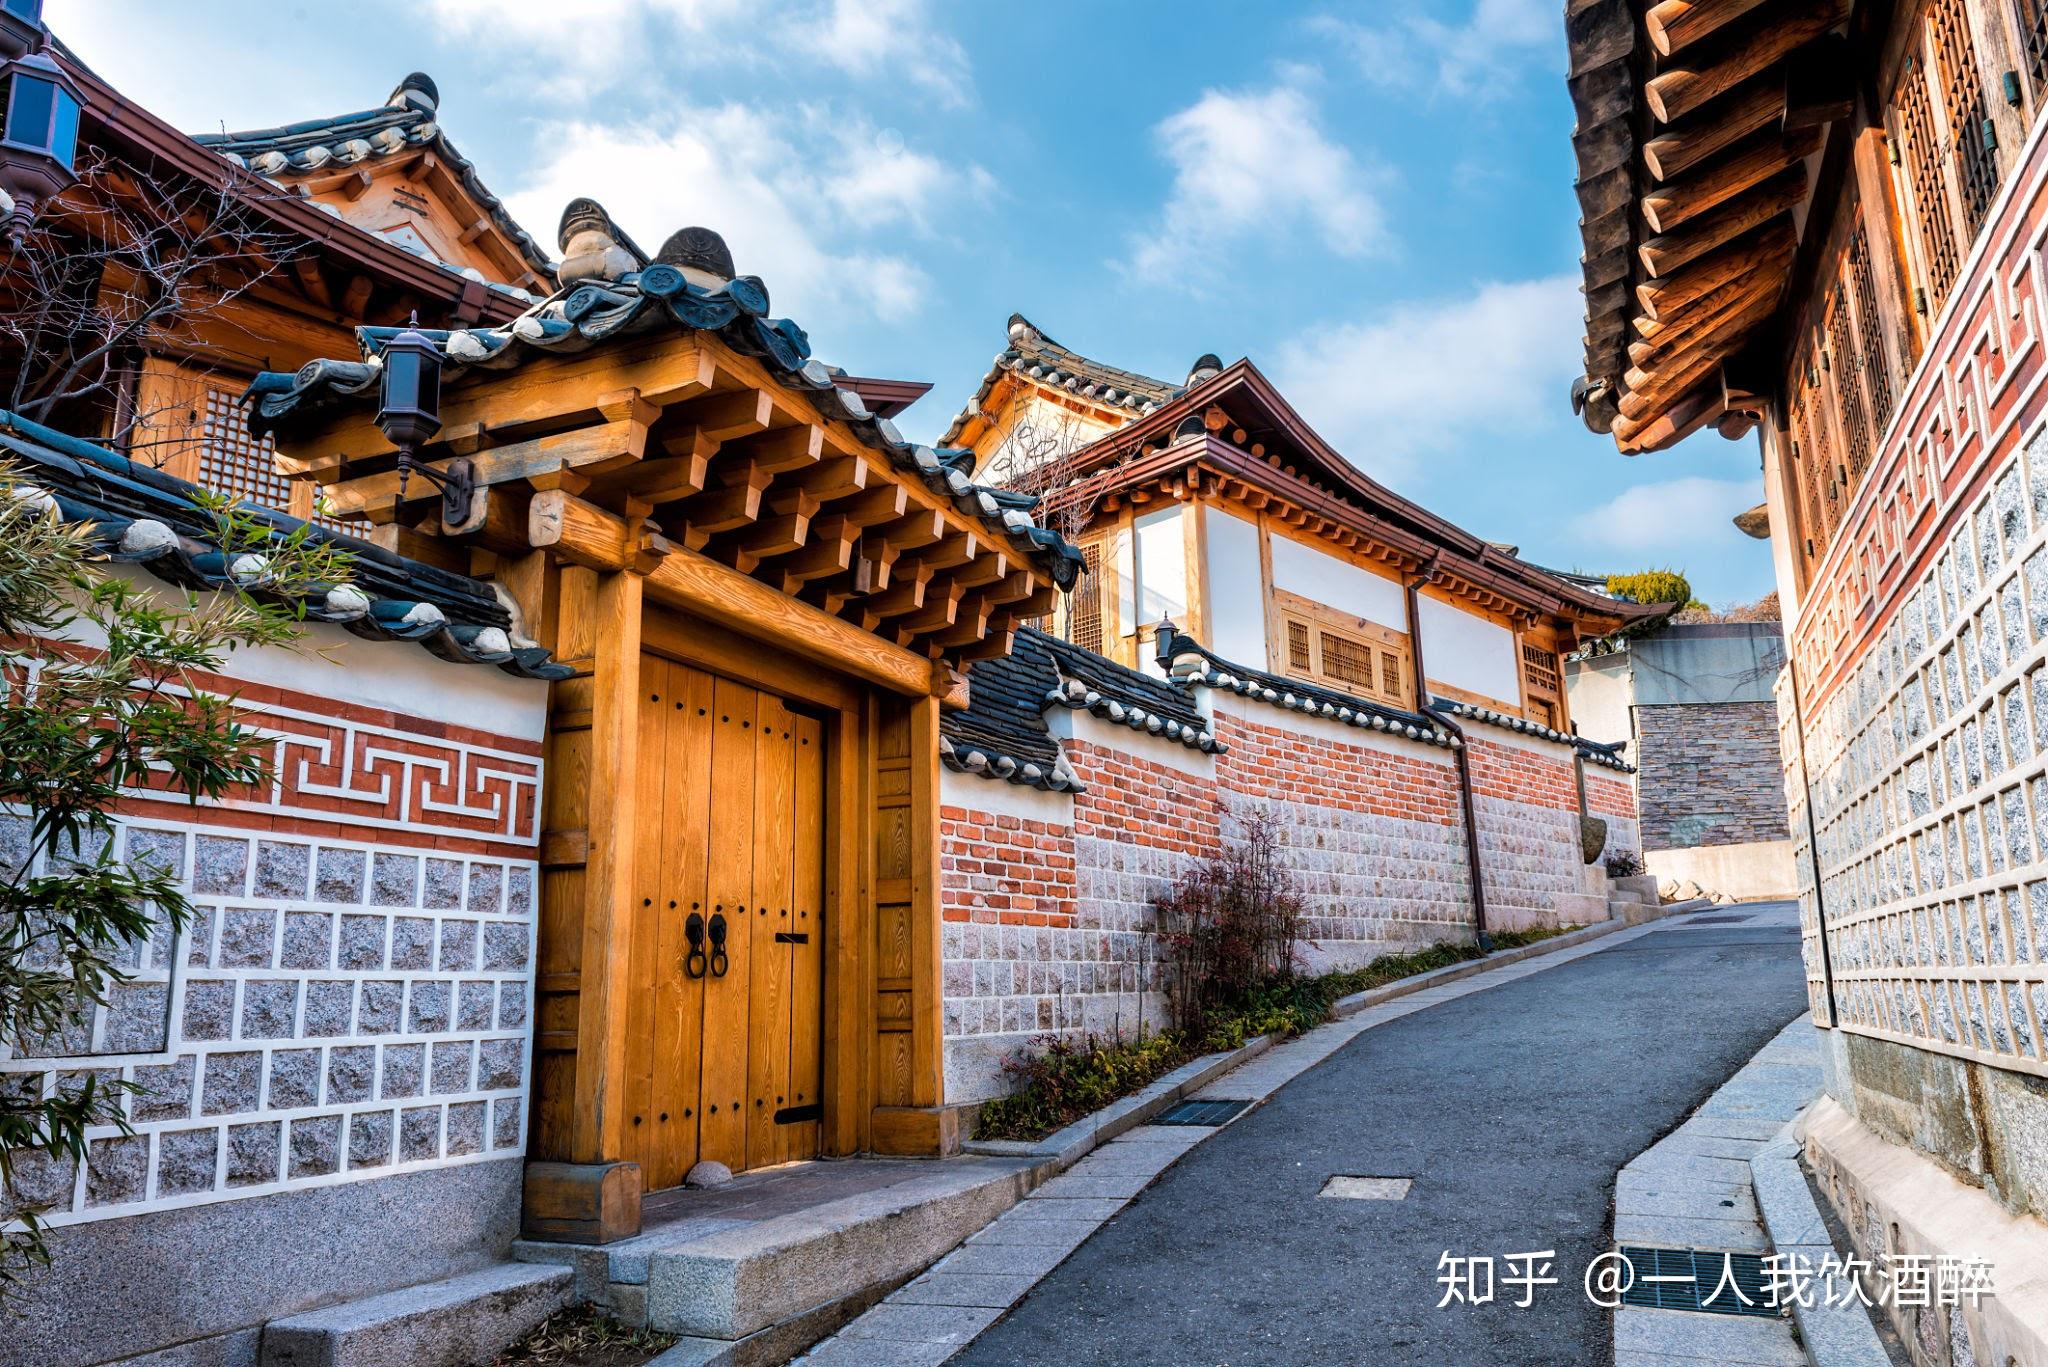 韩国古建筑景点作为必去的旅游特色景点,如果对